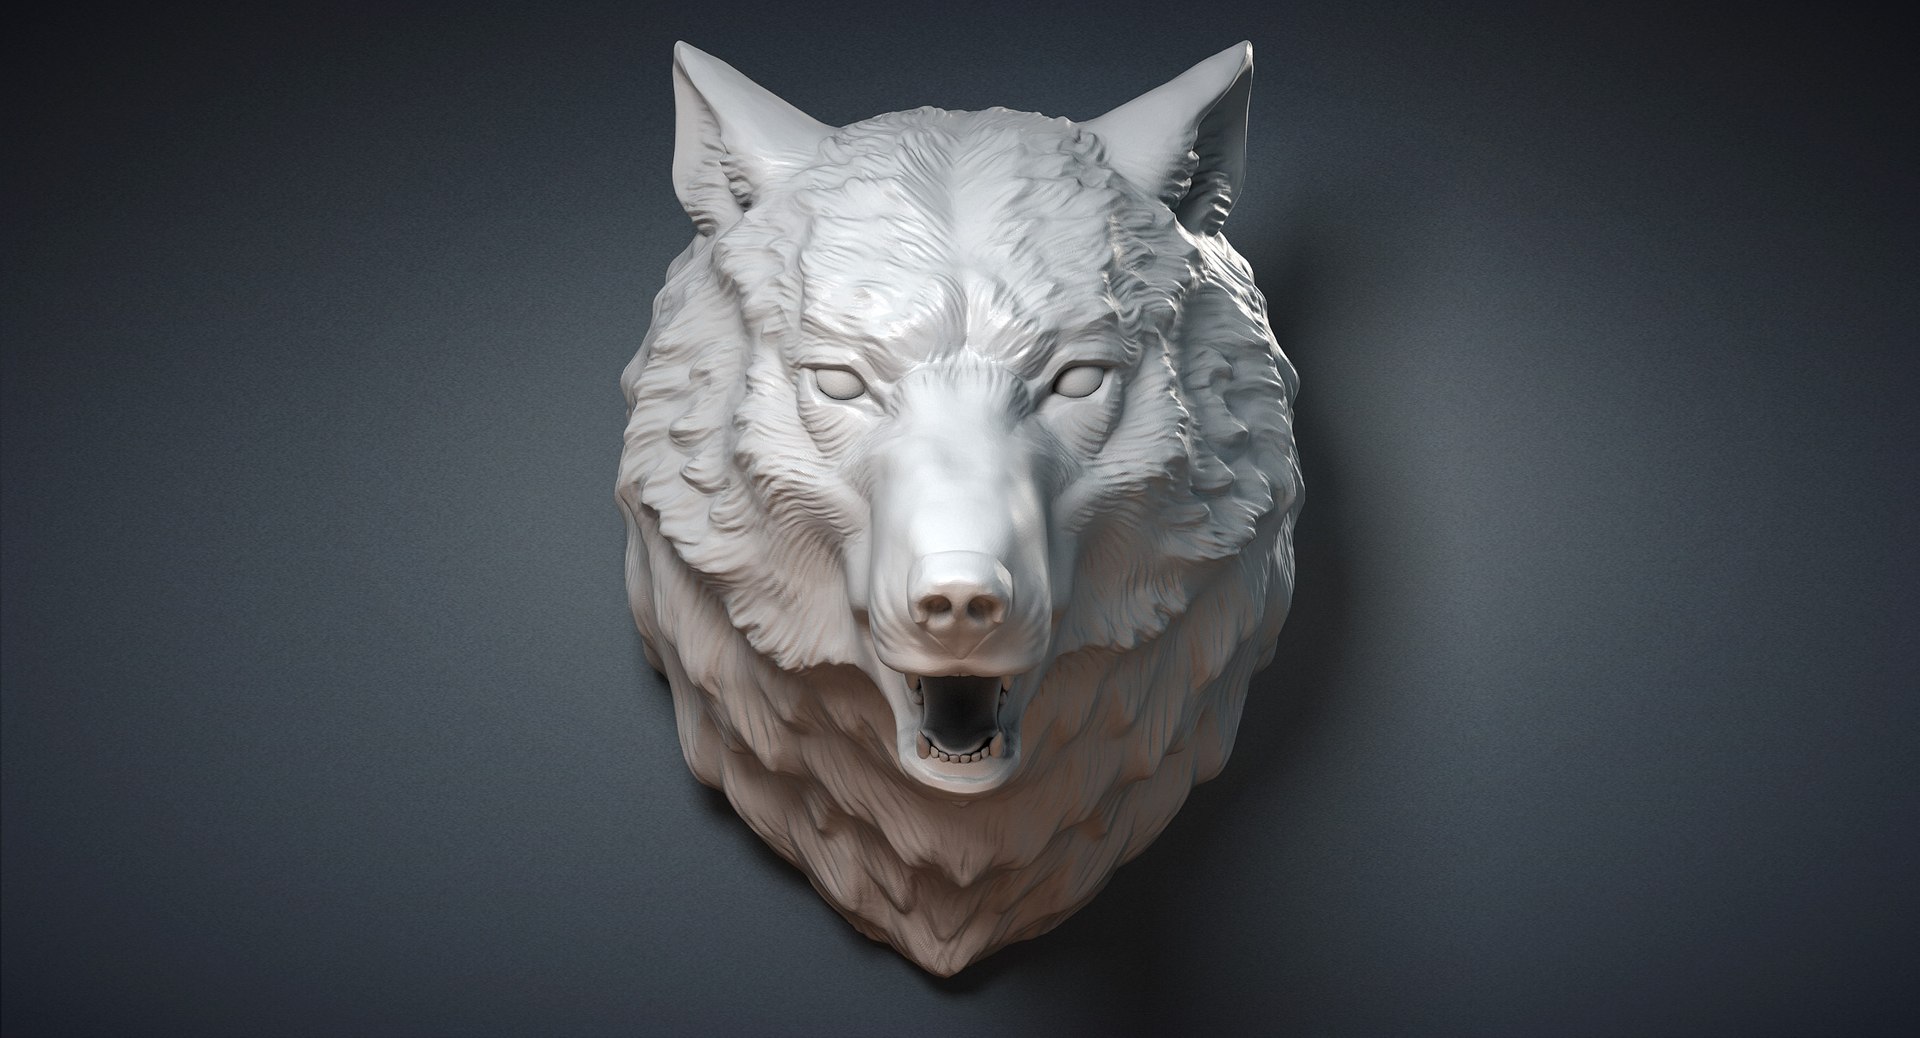 max wolf head sculpture https://p.turbosquid.com/ts-thumb/VM/Zeuojm/00m8ehfz/wolfhead3dmodelom01/jpg/1478690965/1920x1080/fit_q87/1bbb5d37b68df3b6761a0131bc587c399c17eac9/wolfhead3dmodelom01.jpg